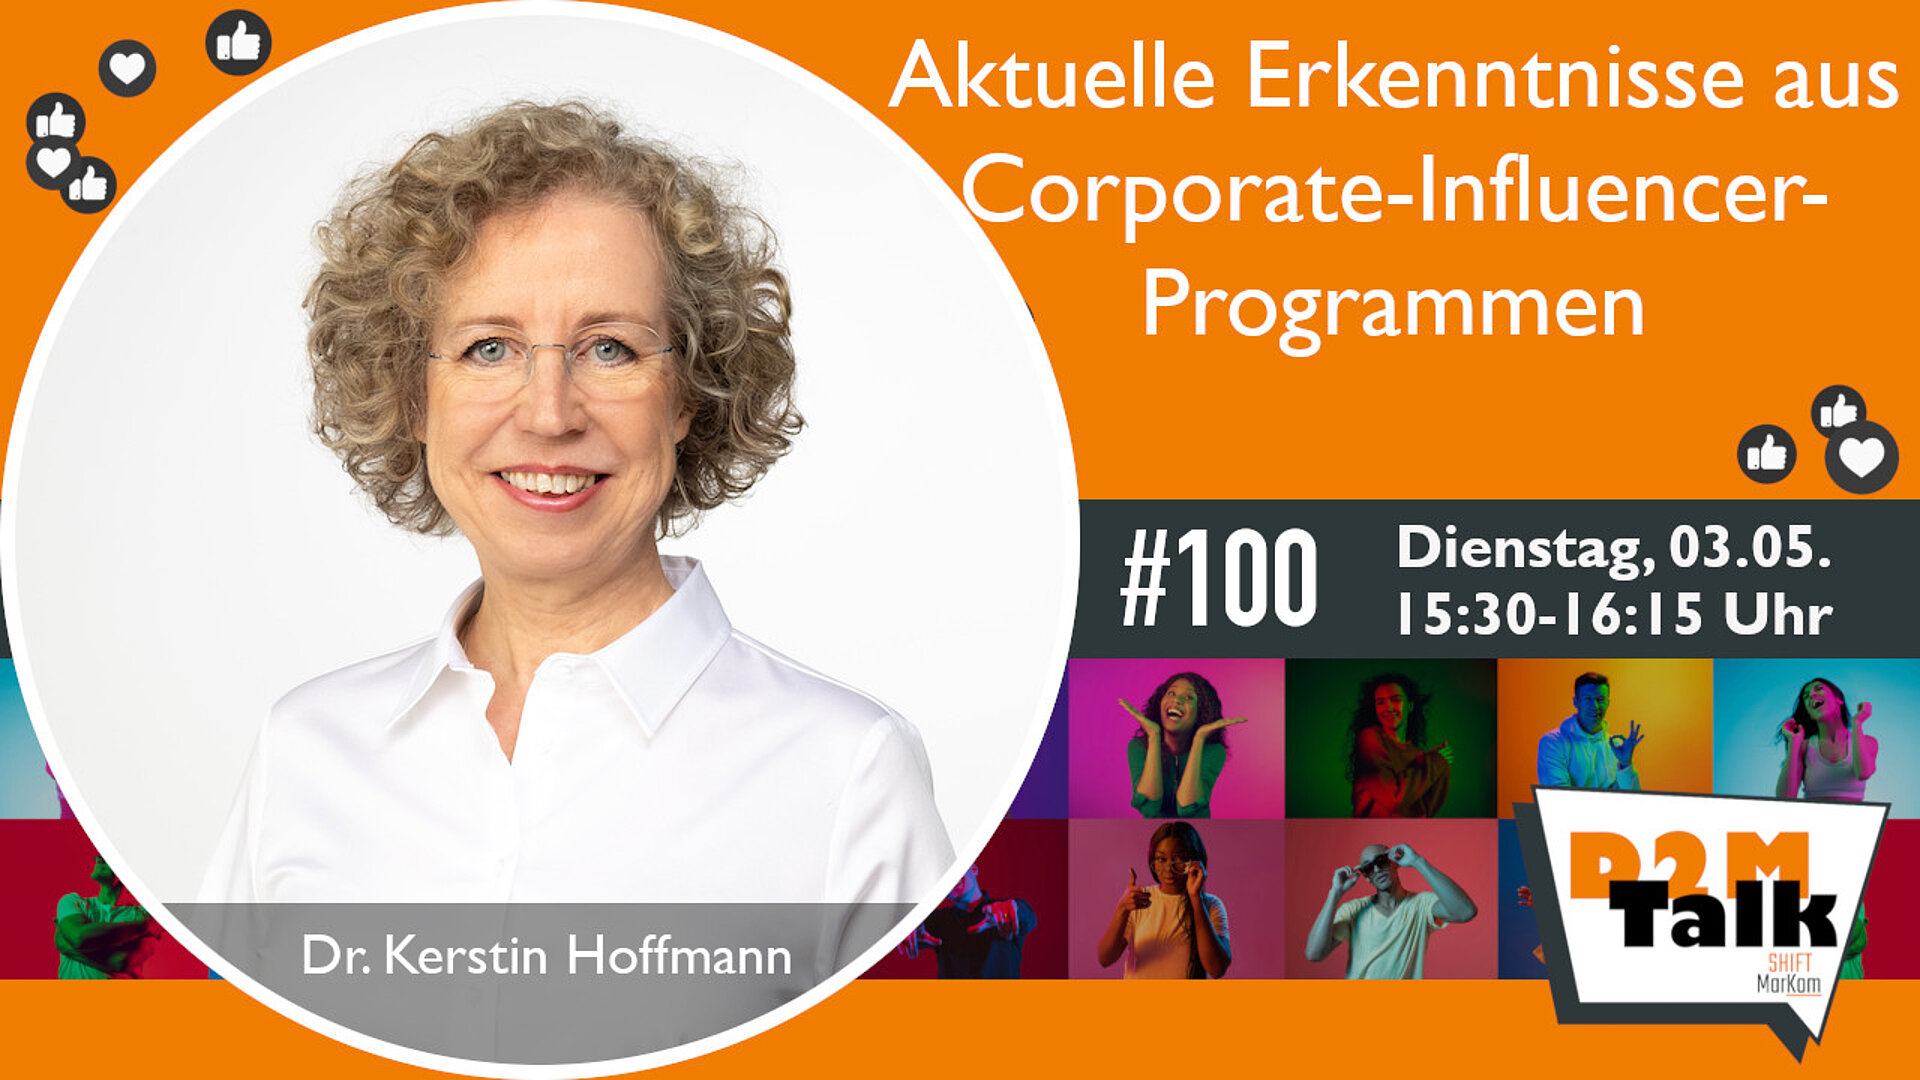 Im Gespräch mit Dr. Kerstin Hoffmann zu aktuellen Erkenntnisse aus Corporate-Influencer-Programmen